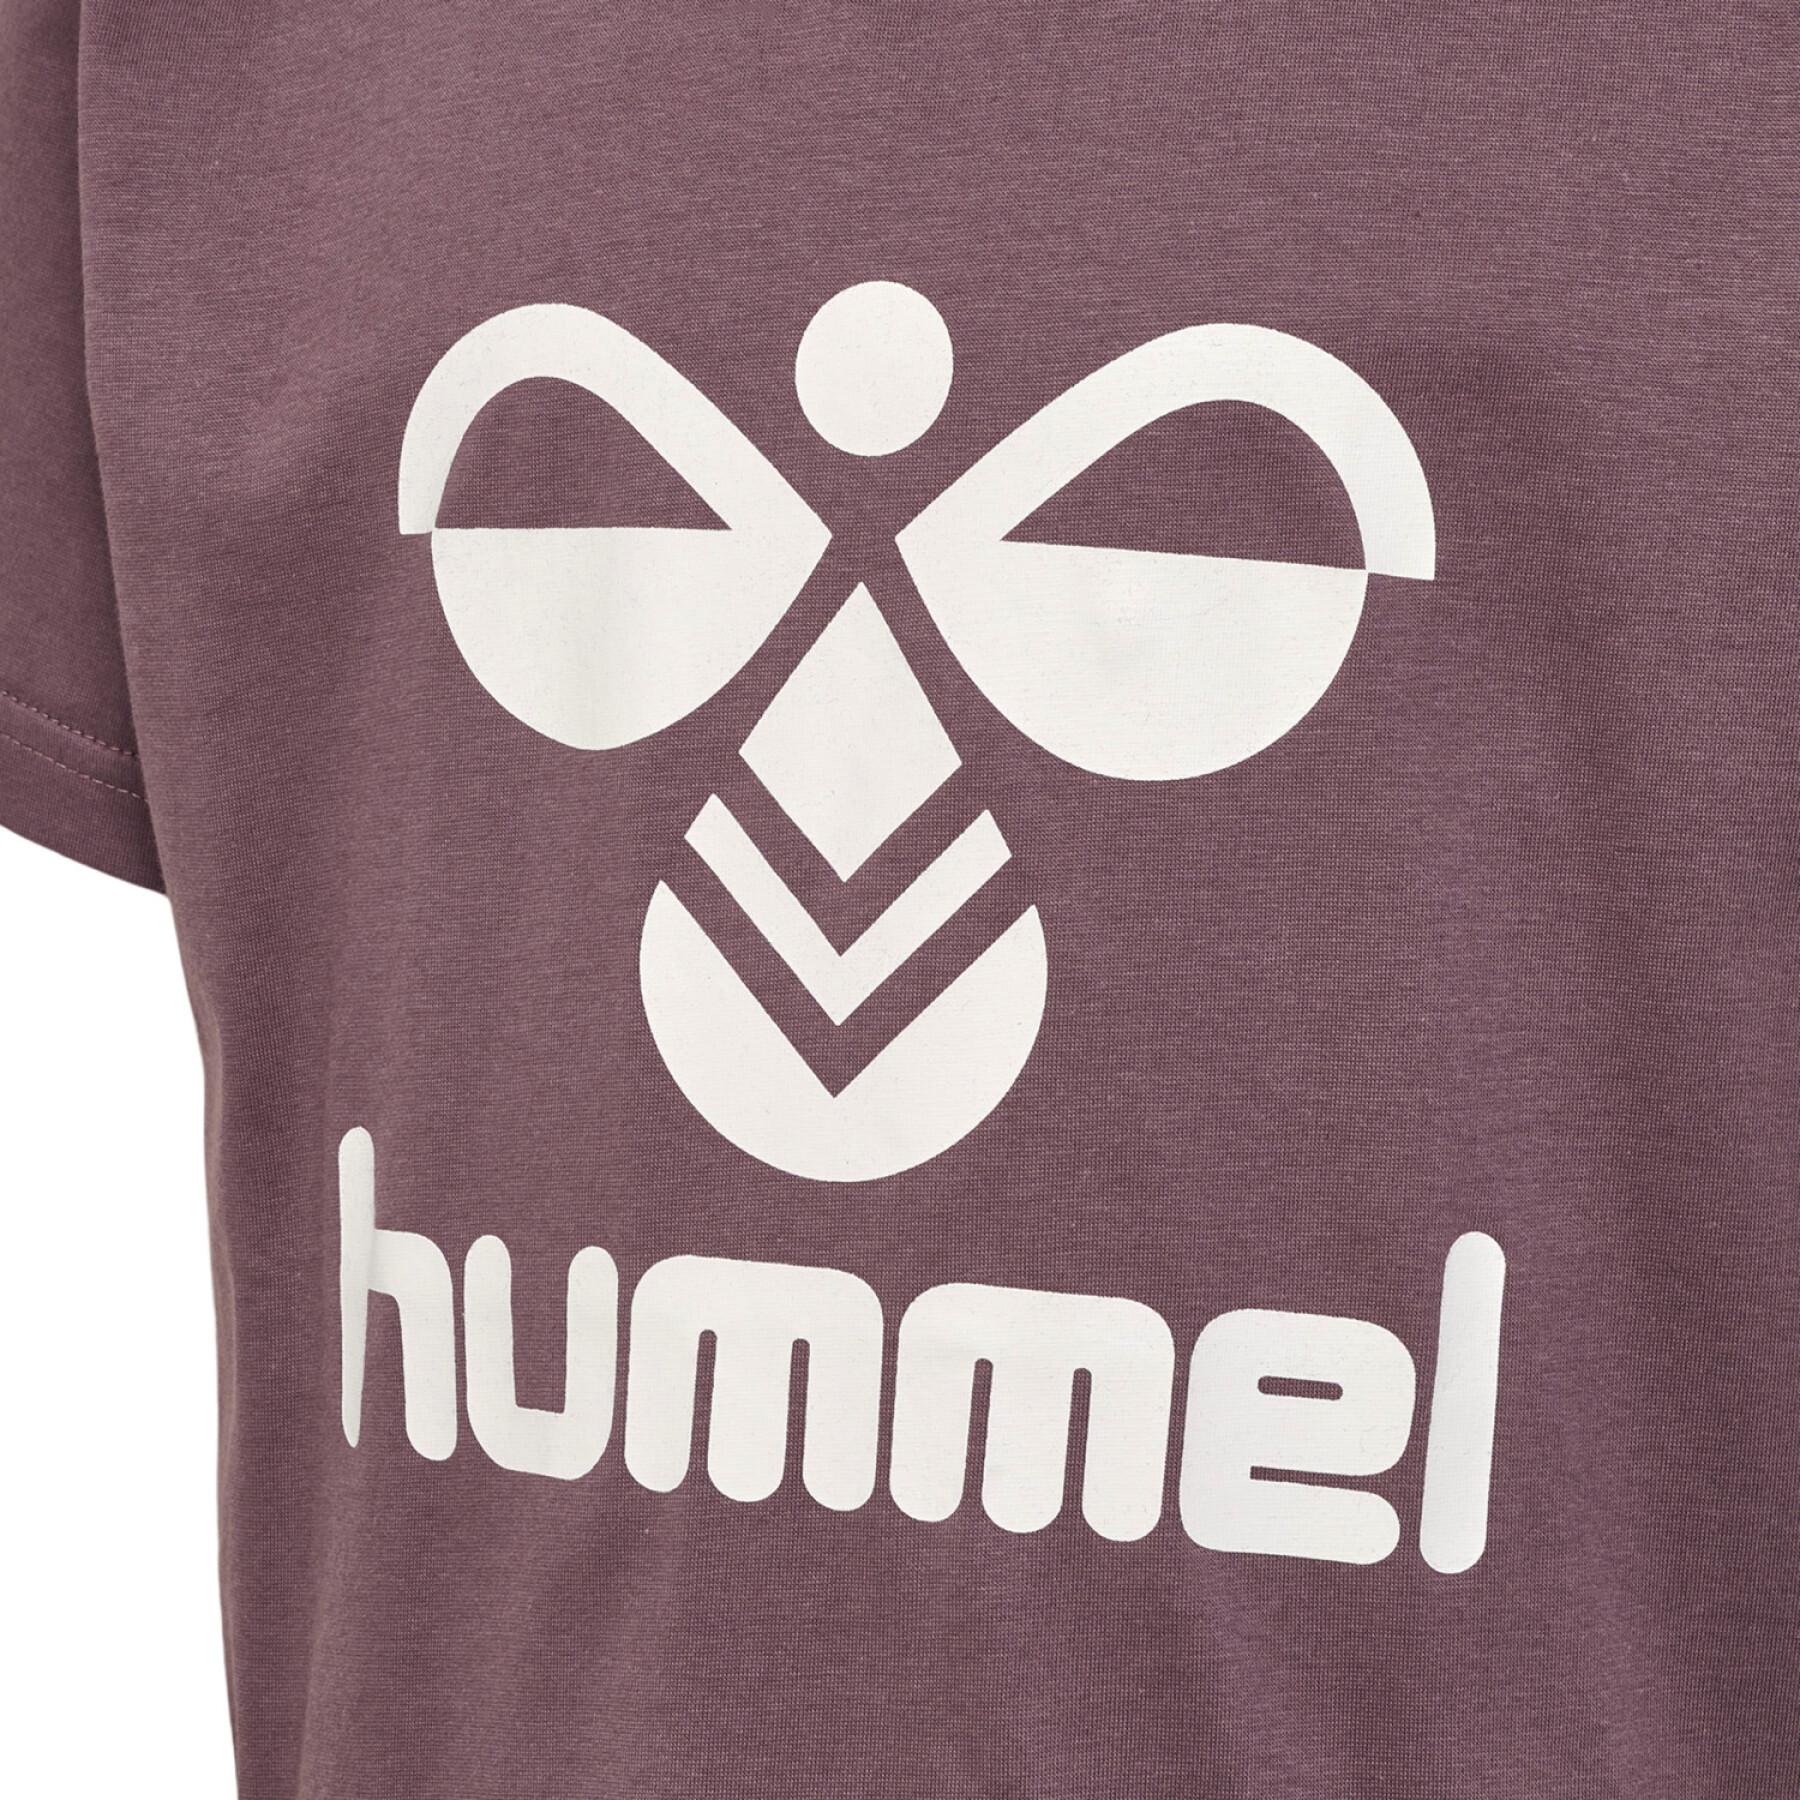 T-shirt enfant Hummel hmlTres